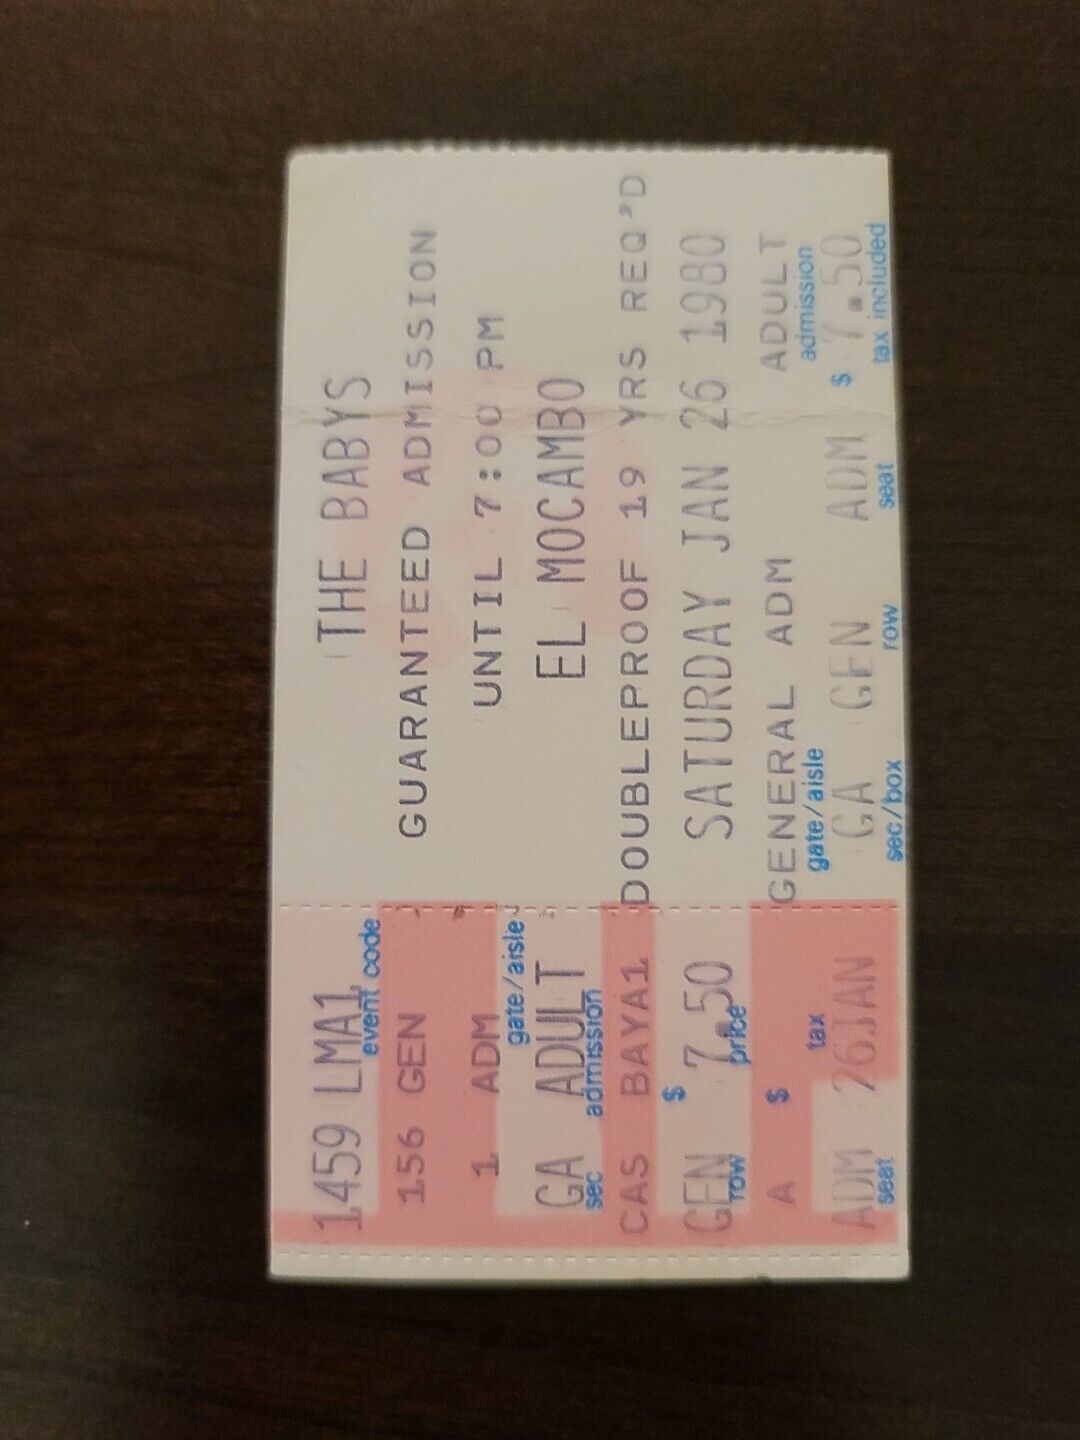 The Babys 1980, Toronto El Mocambo Original Concert Ticket Stub